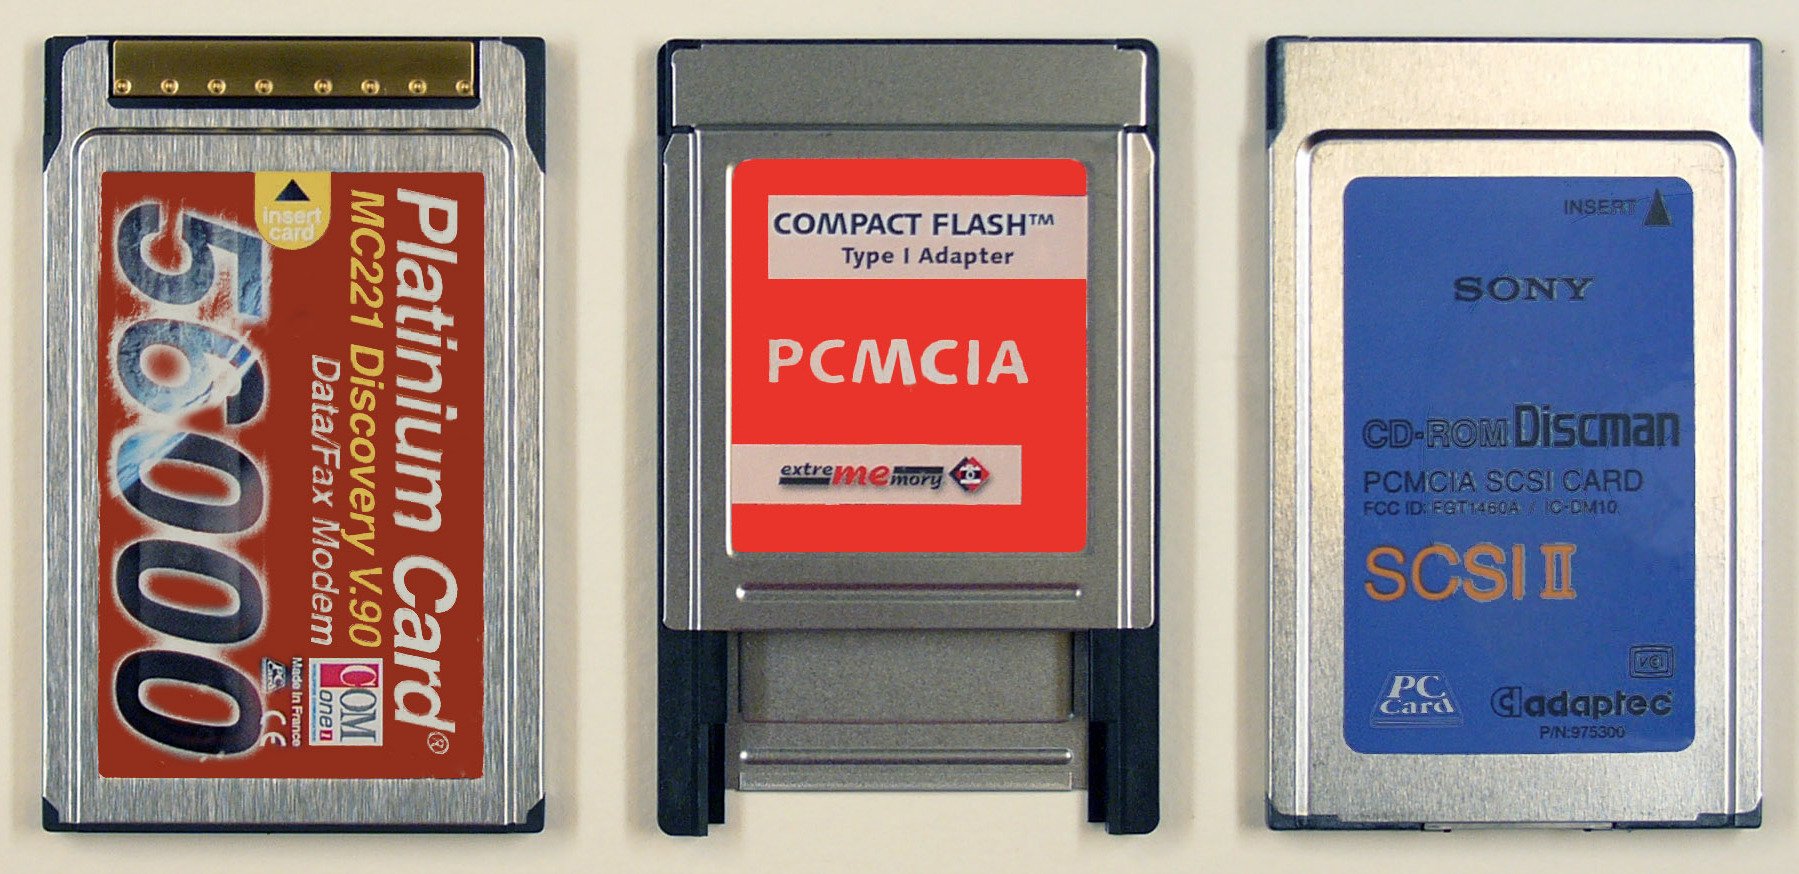 CompactFlash - Wikipedia